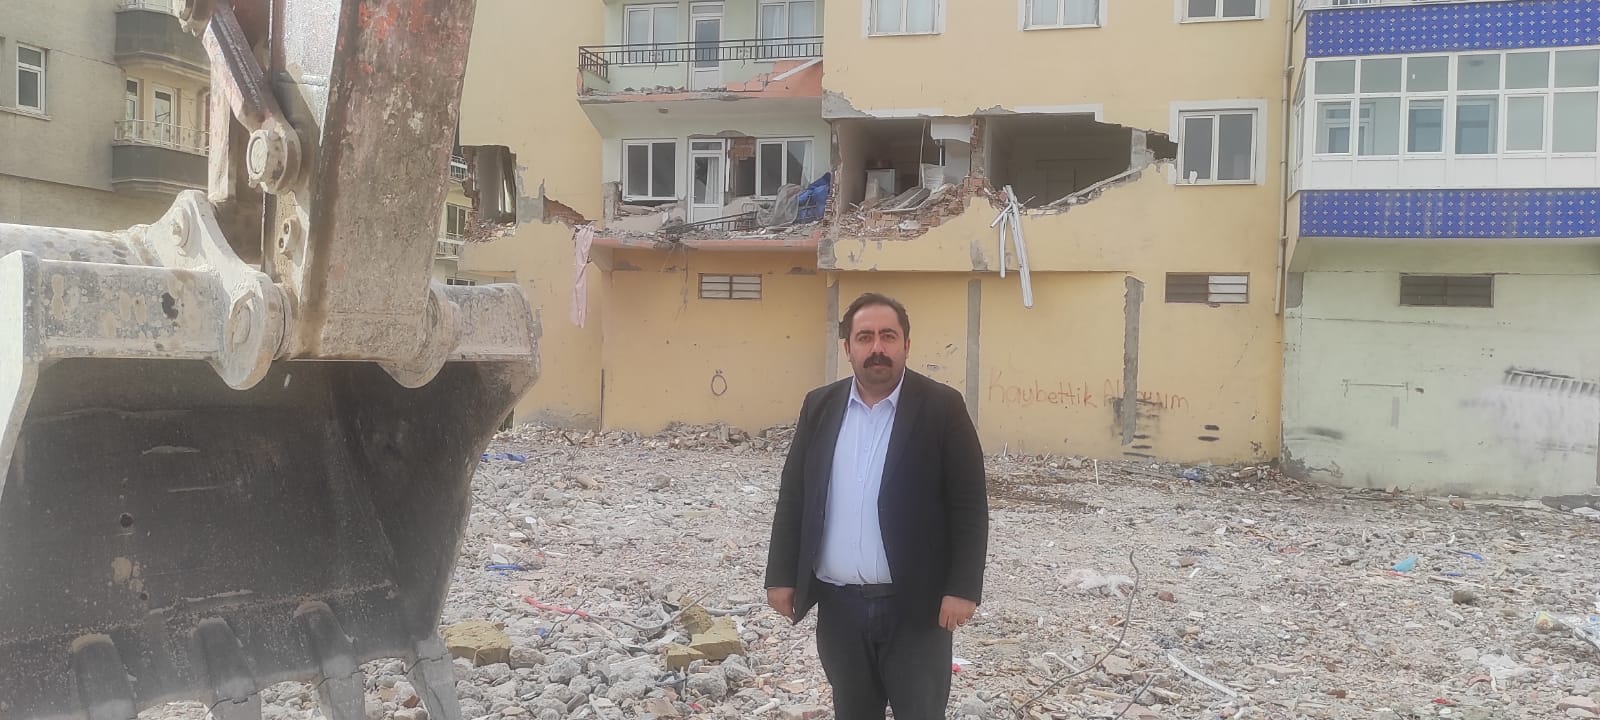 CHP Hasarsız Binalara Zarar Verilmesini Eleştirdi